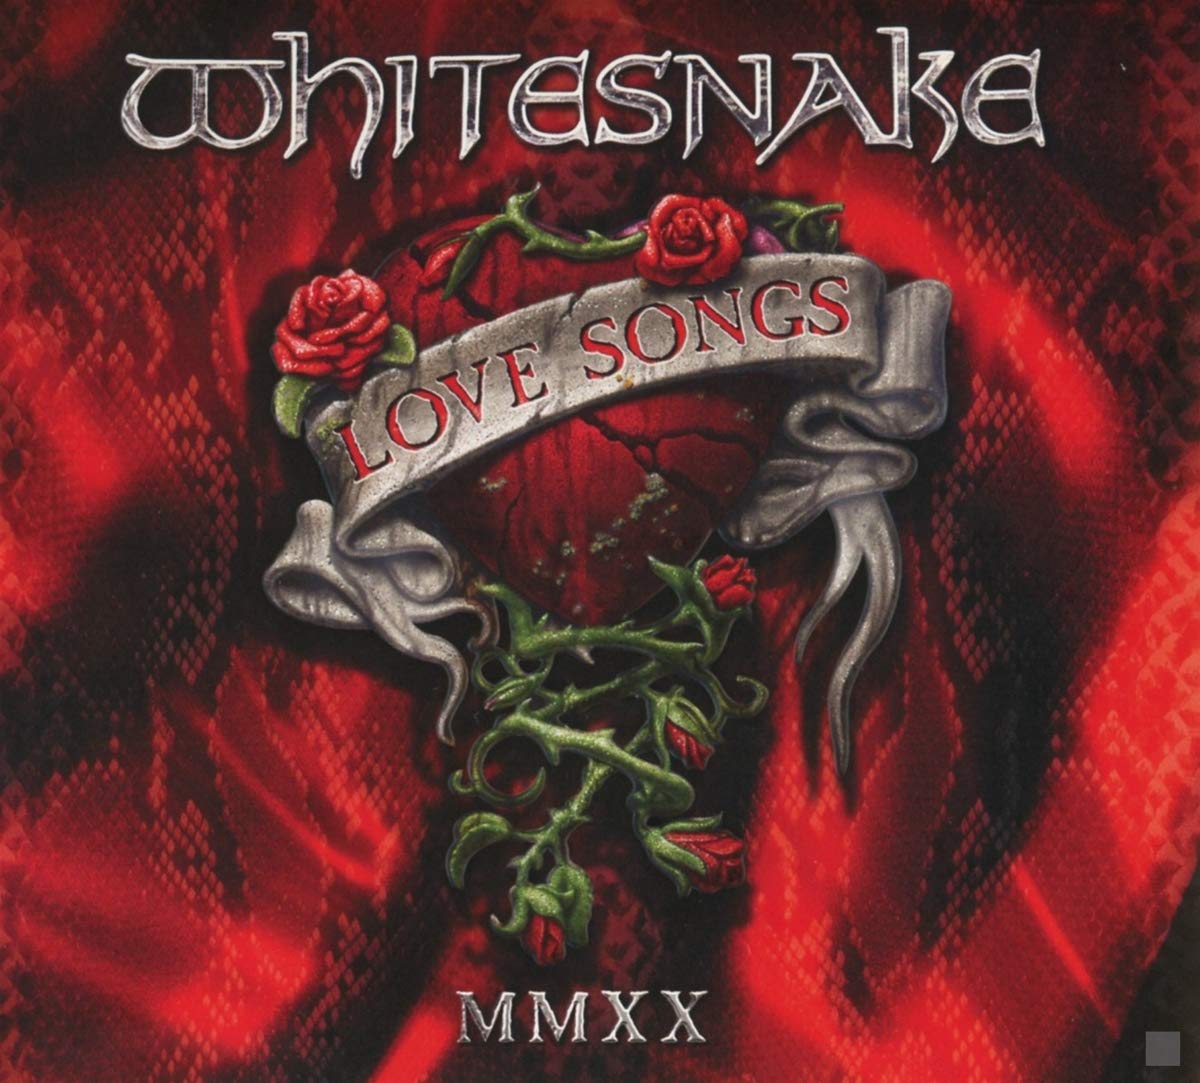 Whitesnake-Love Songs MMXX-(R2 643449)-REMASTERED-CD-FLAC-2020-WRE